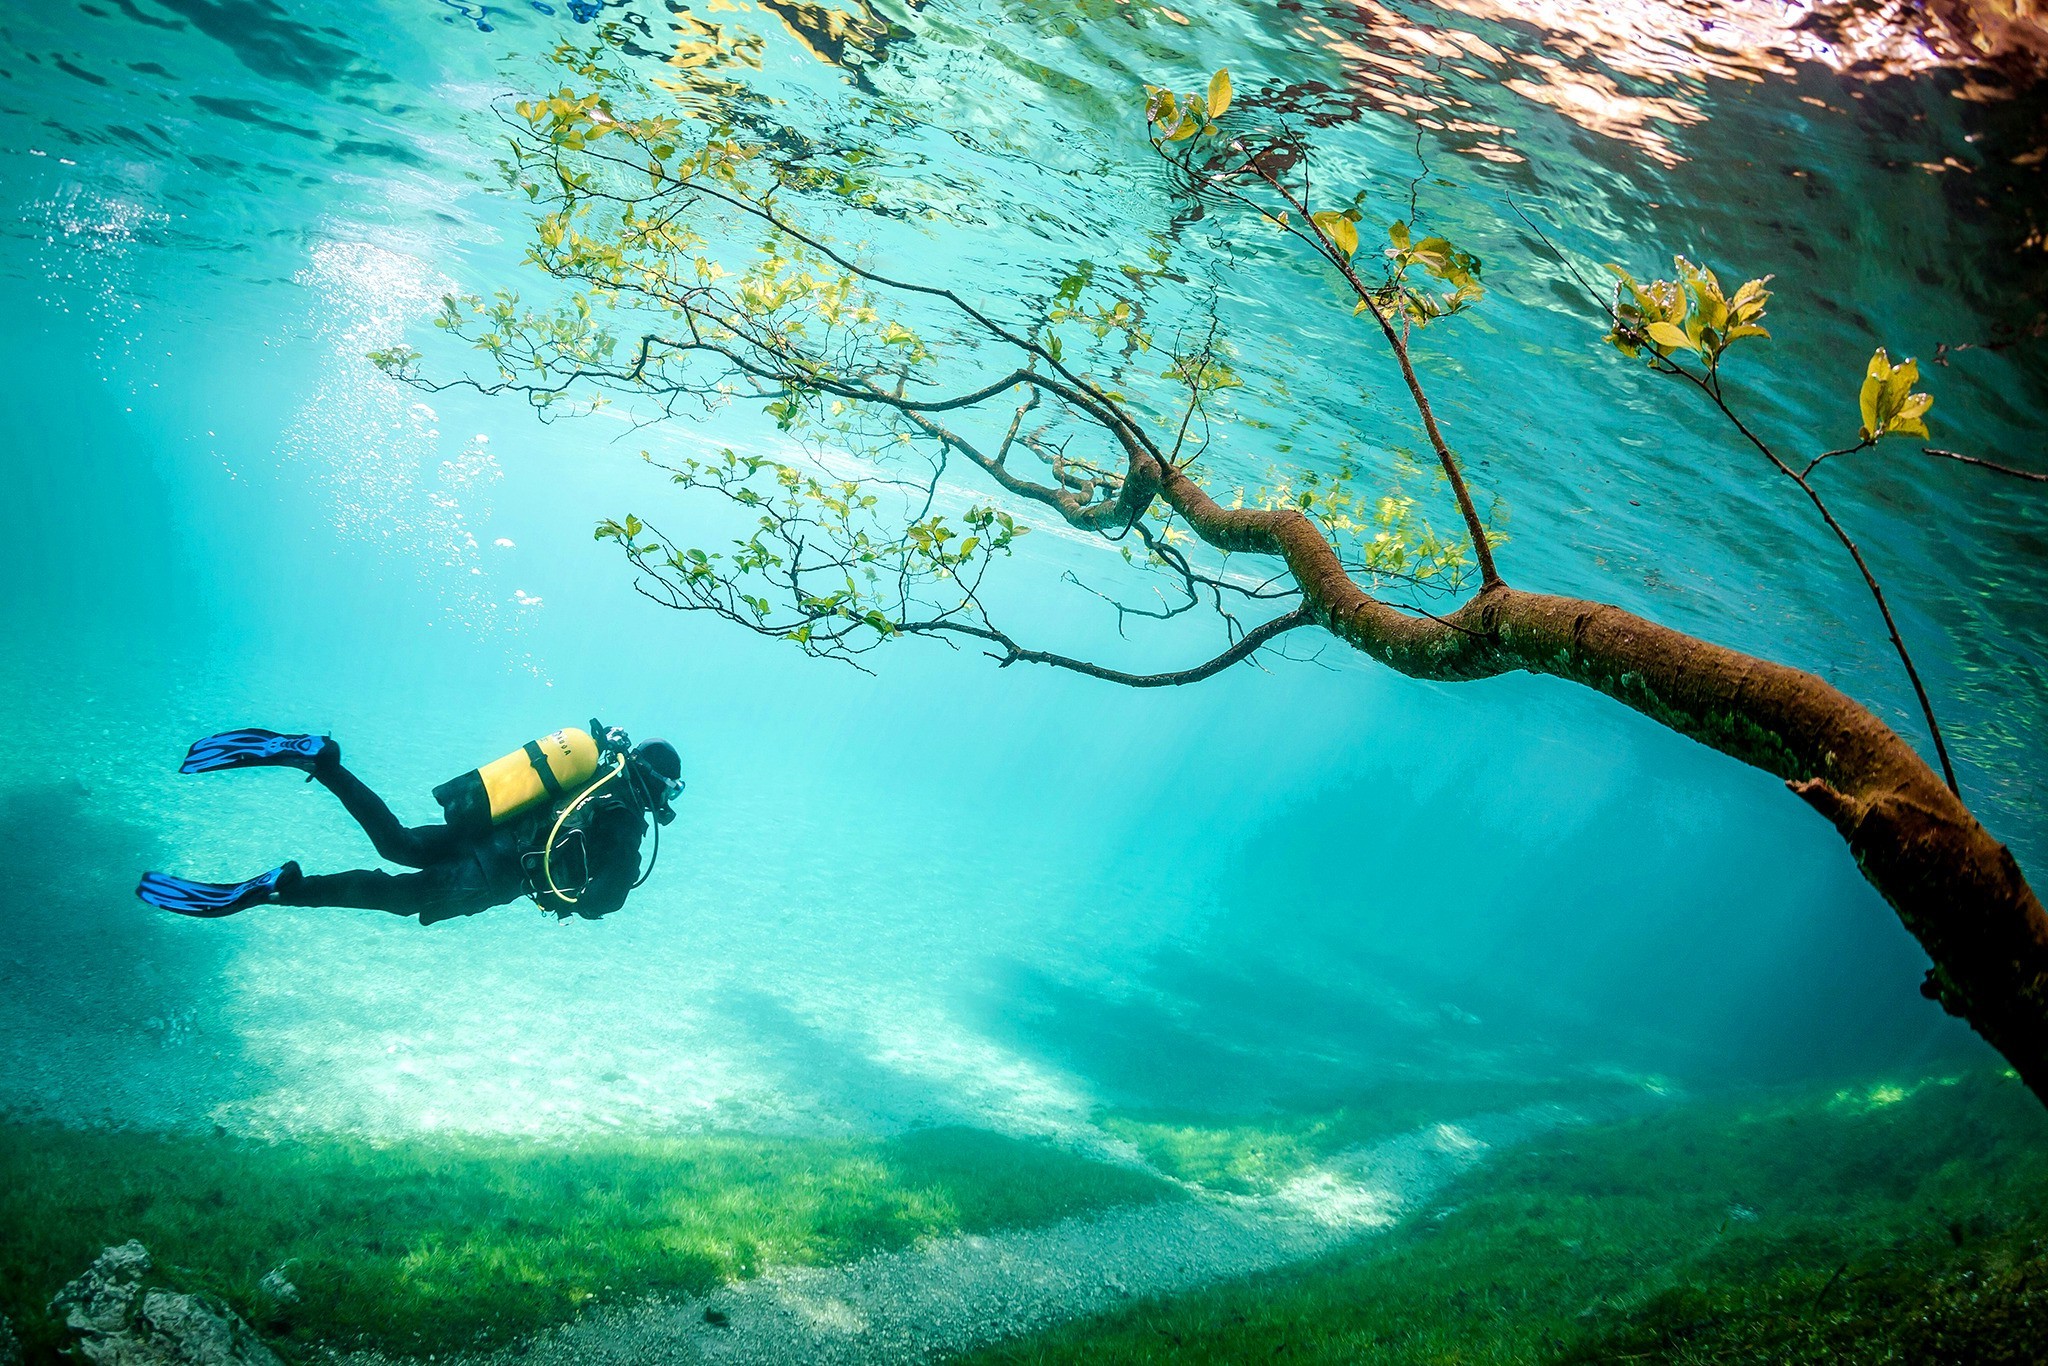 Grüner See สวรรค์ใต้น้ำบนดินแห่งออสเตรีย